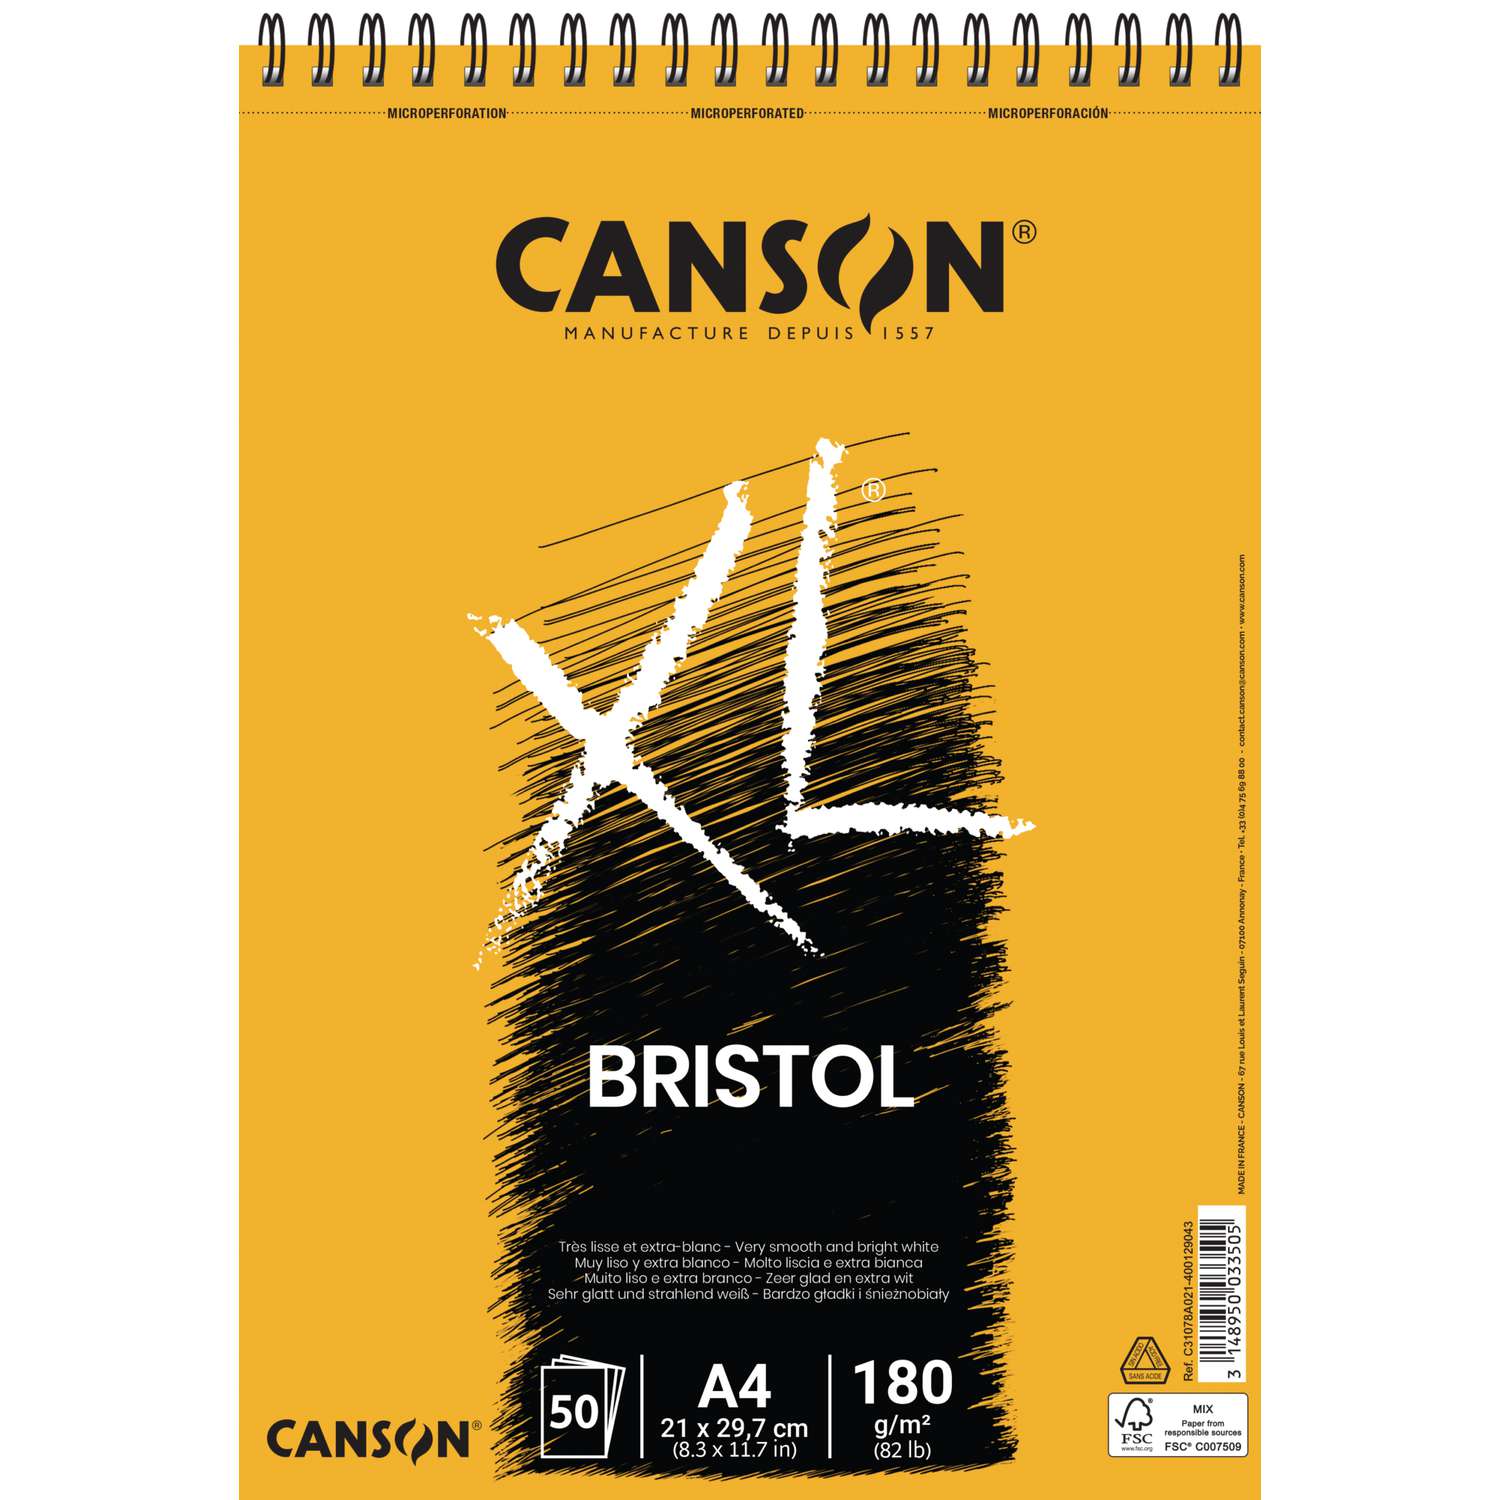 Smaak Crimineel Actief CANSON® XL® Bristol Bristolpapier | Gerstaecker - De grootste online winkel  voor kunstenaarsbenodigdheden!